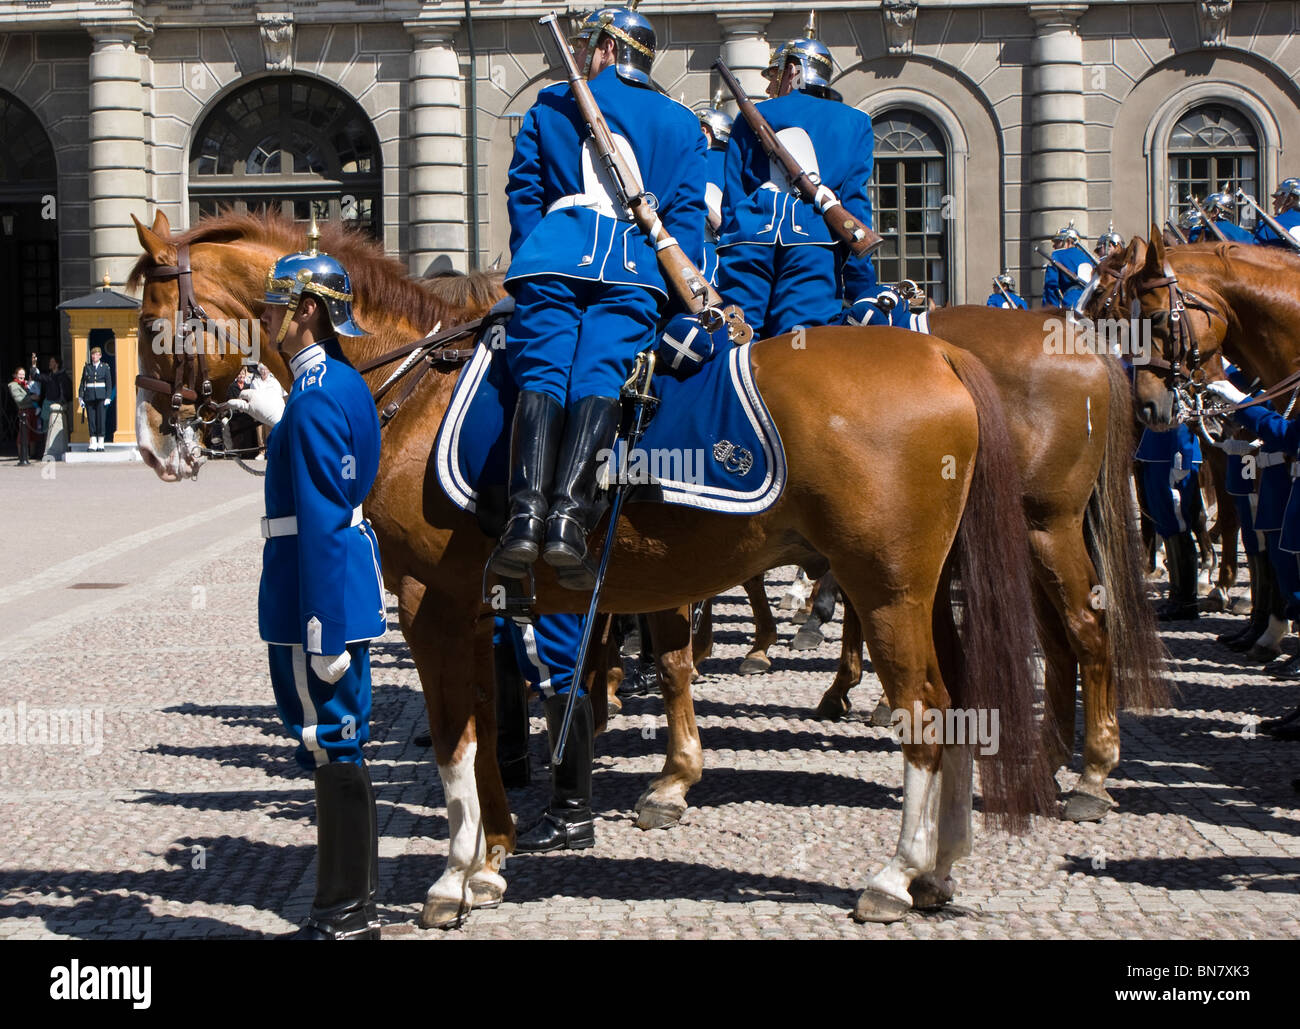 La Garde royale suédoise à la relève quotidienne de la garde du palais royal de Stockholm. Les soldats se préparent à sortir. Banque D'Images